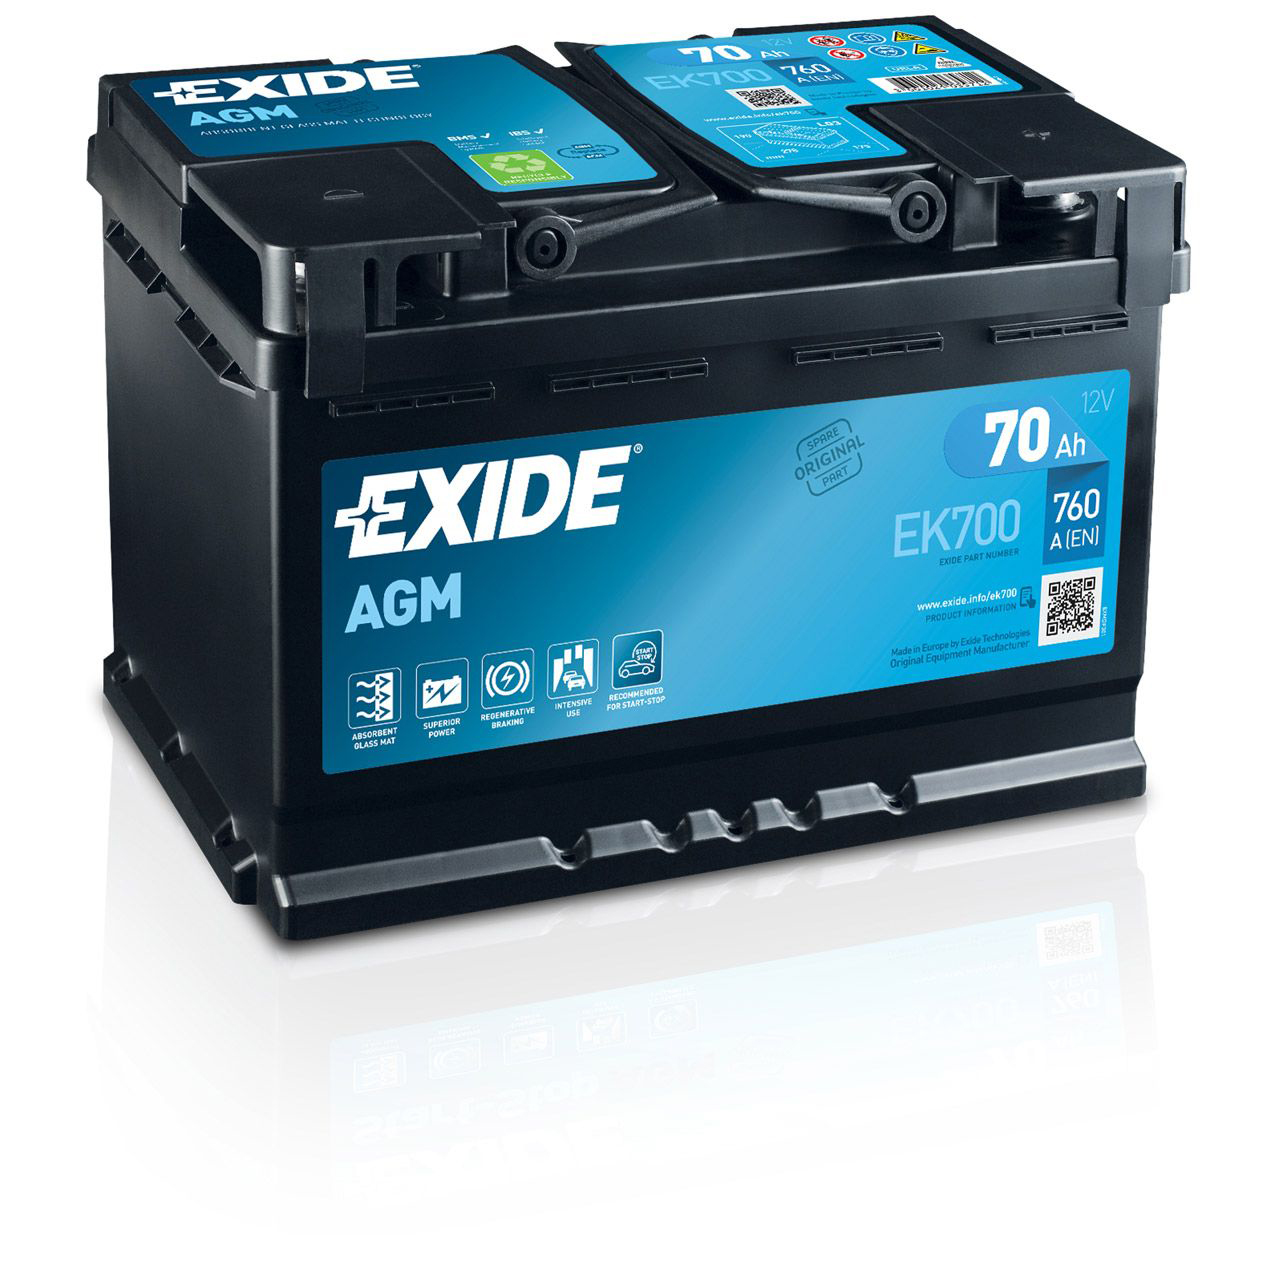 EXIDE EK700 AGM START-STOP Autobatterie Batterie Starterbatterie 12V 70Ah EN760A